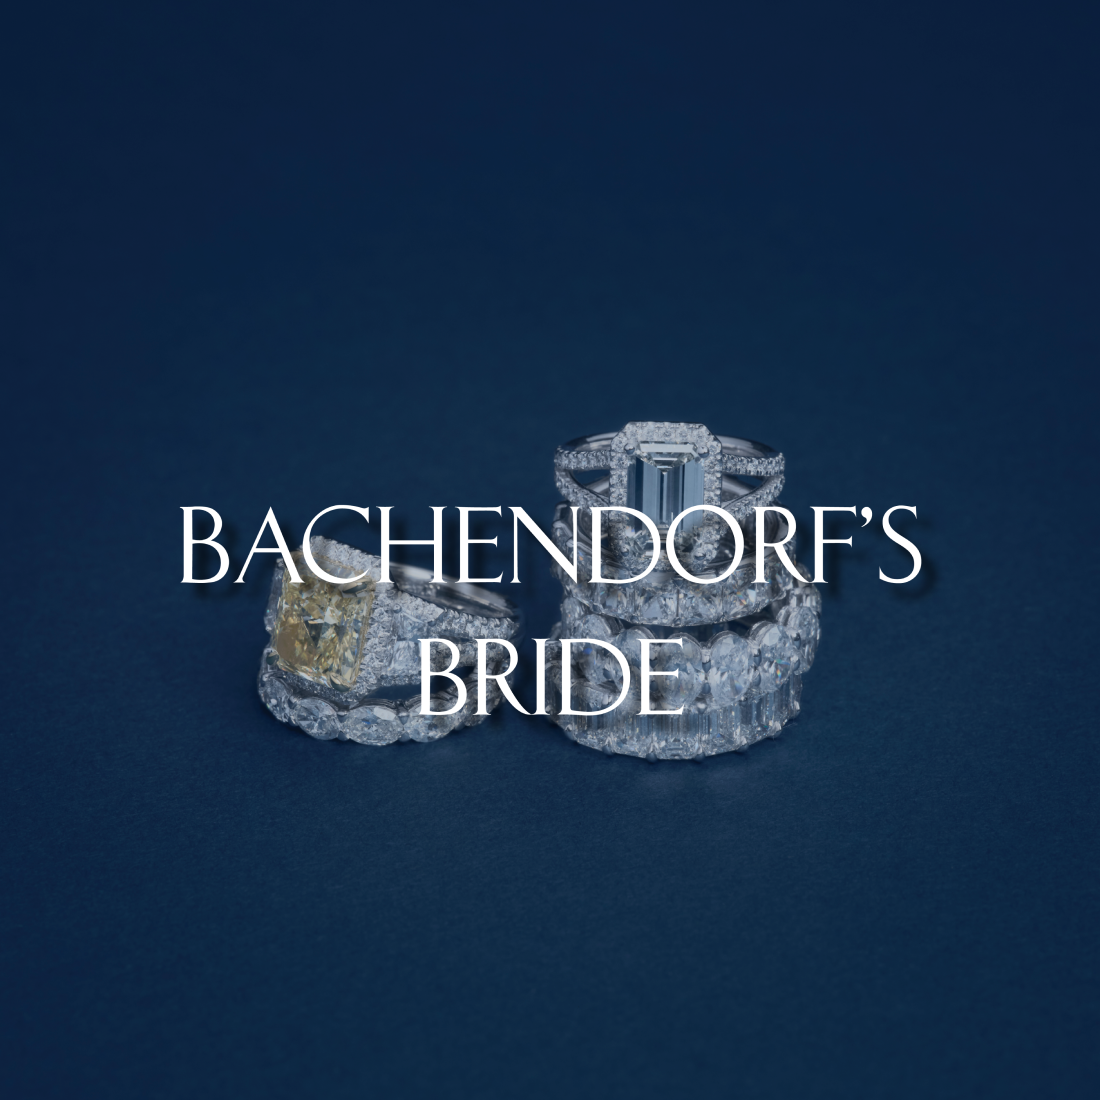 Bachendorf's Bride